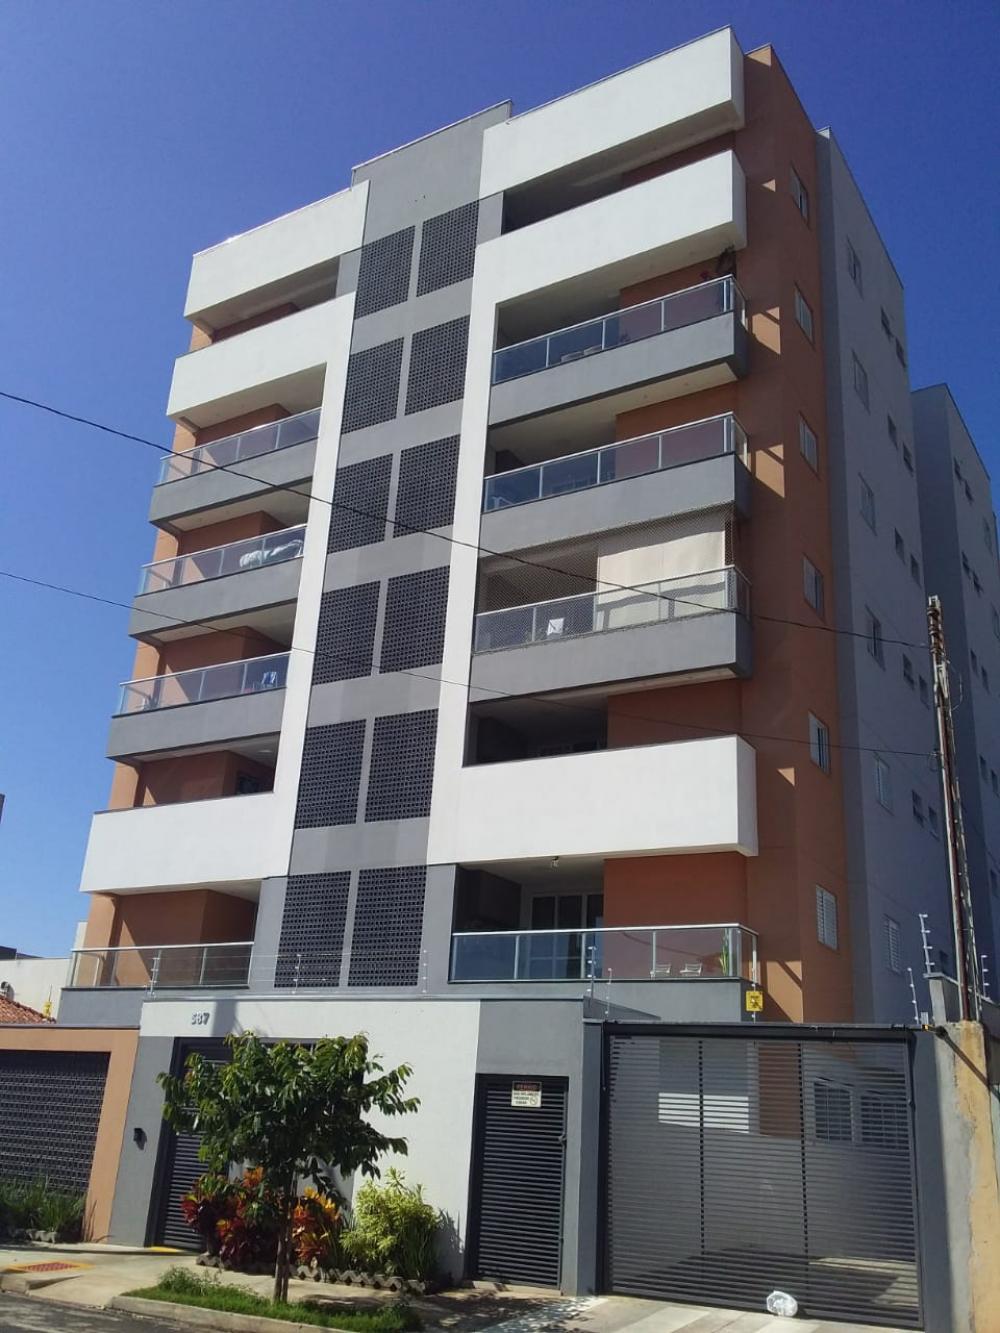 Comprar Apartamento / Padrão em São José do Rio Preto apenas R$ 670.000,00 - Foto 13